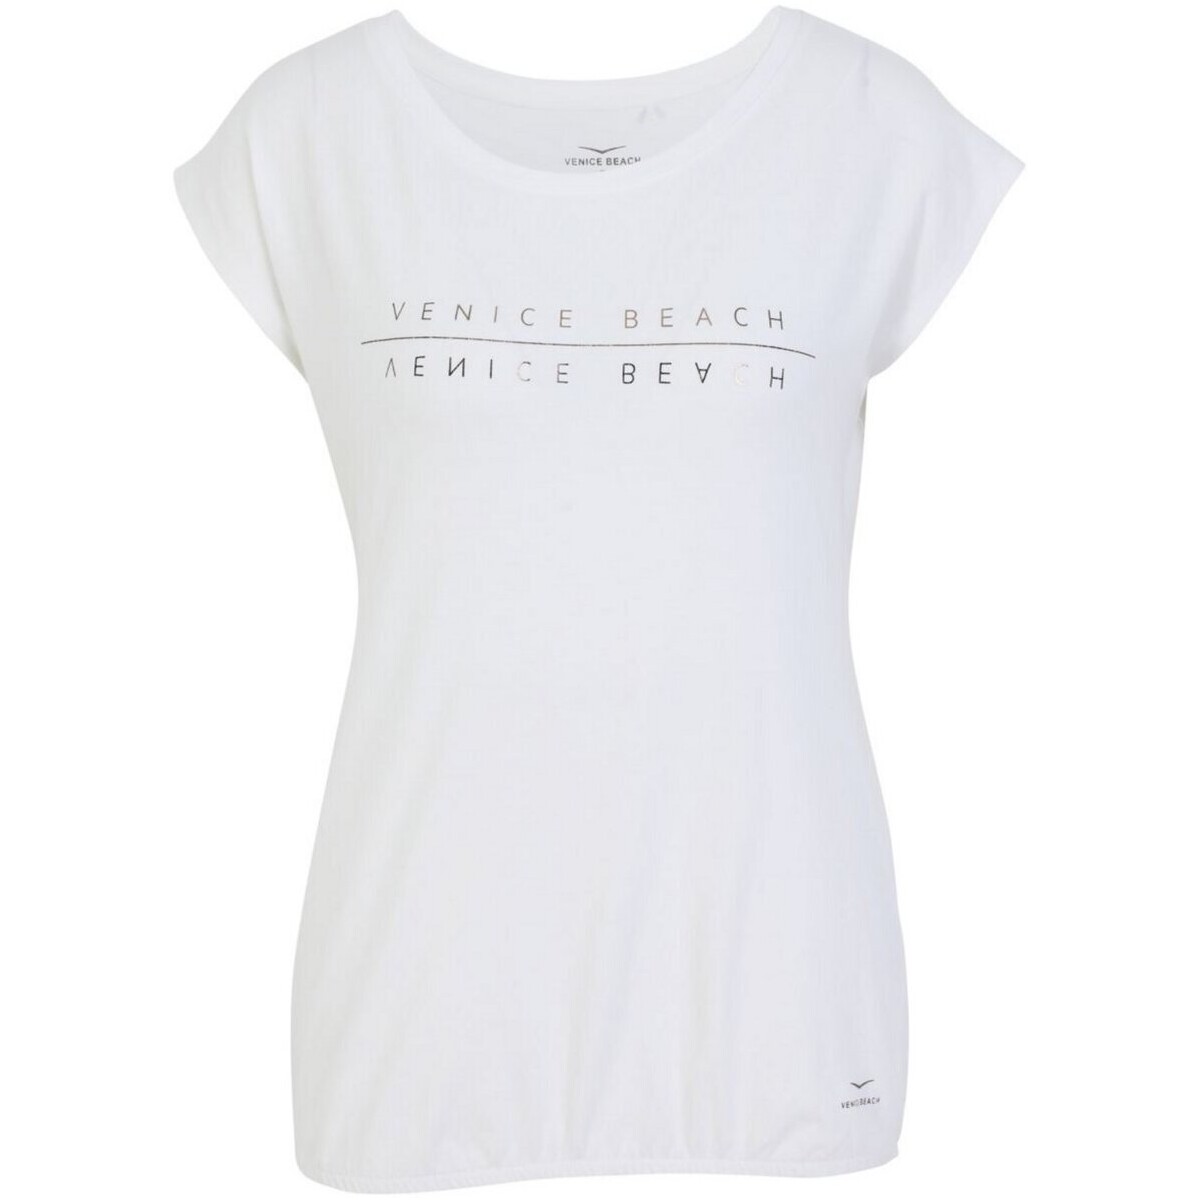 Kleidung Damen Tops Venice Beach Sport VB_Wonder 4004_09 T-Shirt 16186/166 Weiss